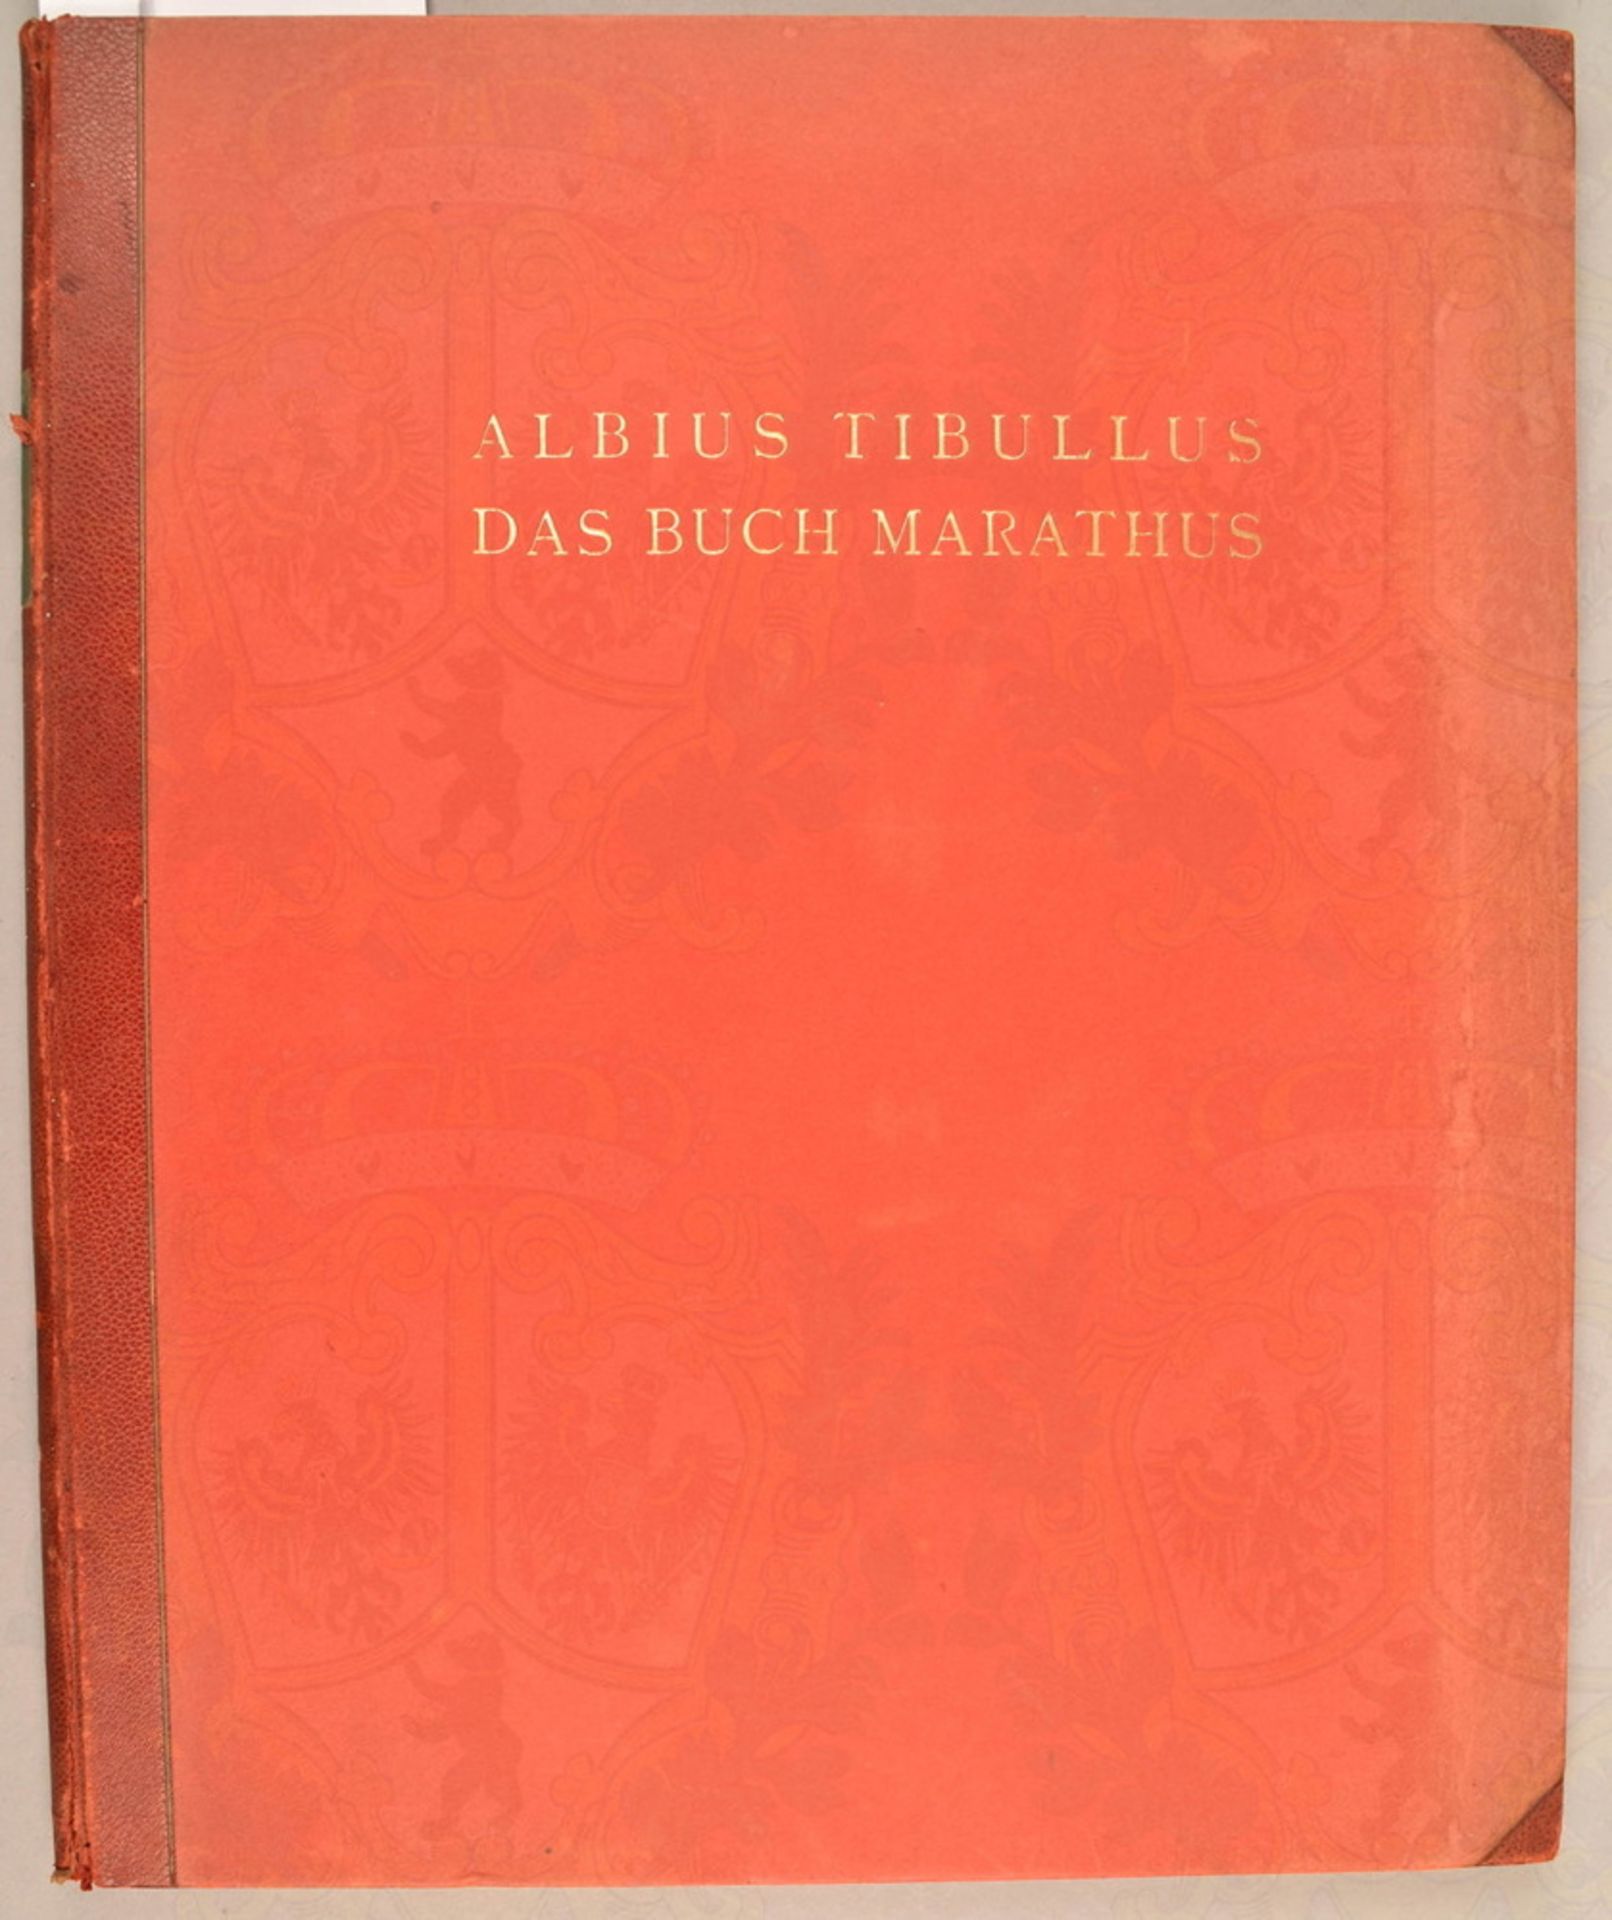 Albius Tibullus Das Buch Marathus